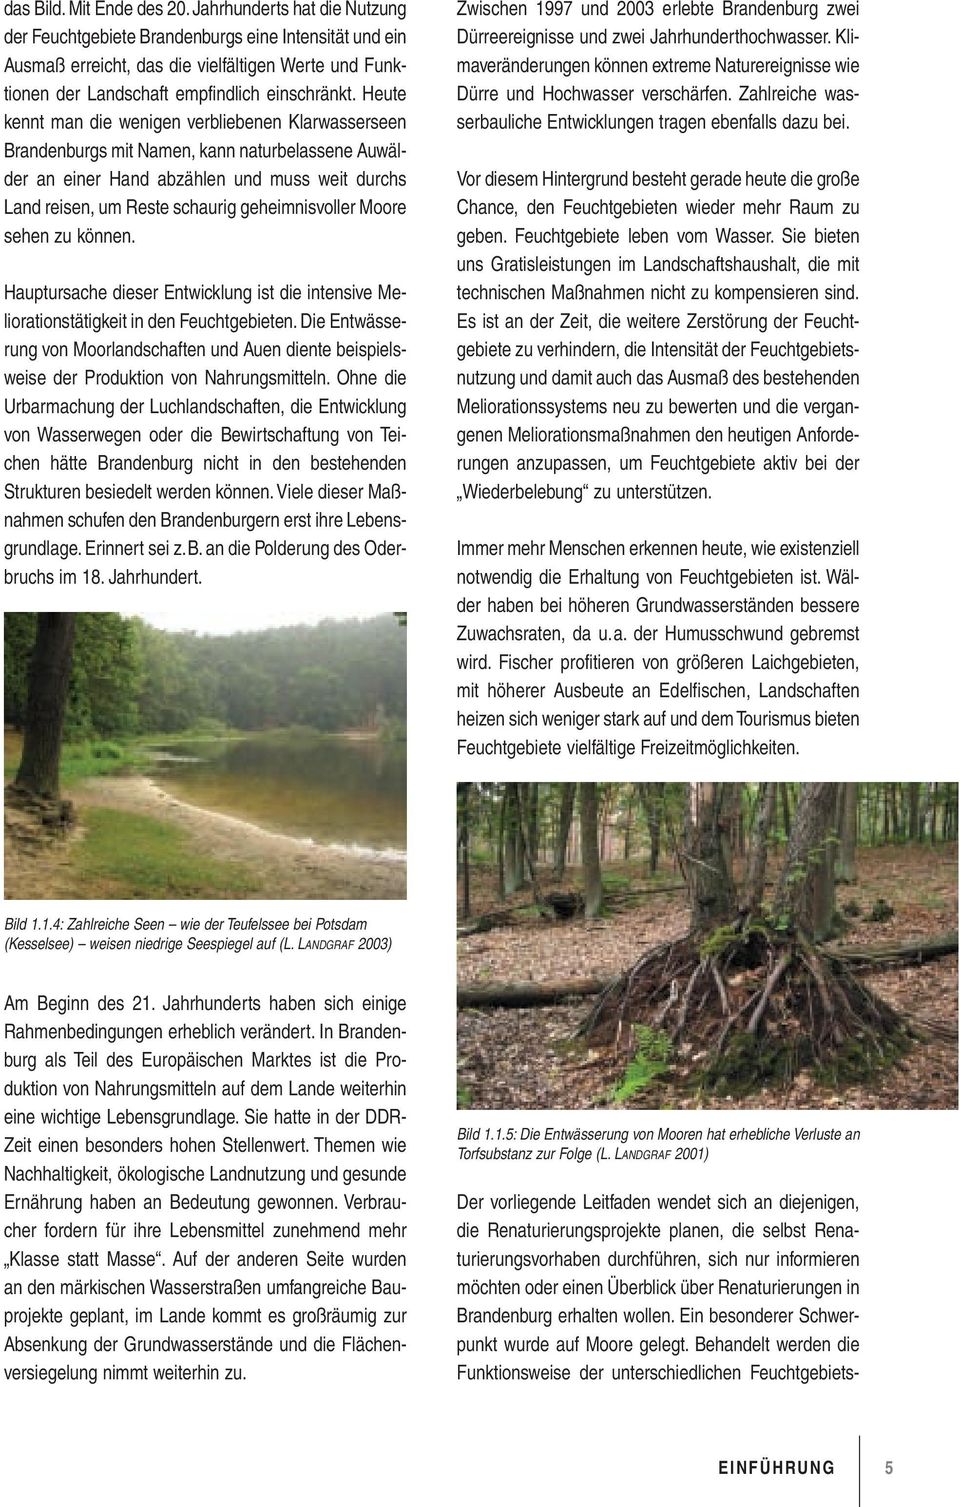 Heute kennt man die wenigen verbliebenen Klarwasserseen Brandenburgs mit Namen, kann naturbelassene Auwälder an einer Hand abzählen und muss weit durchs Land reisen, um Reste schaurig geheimnisvoller